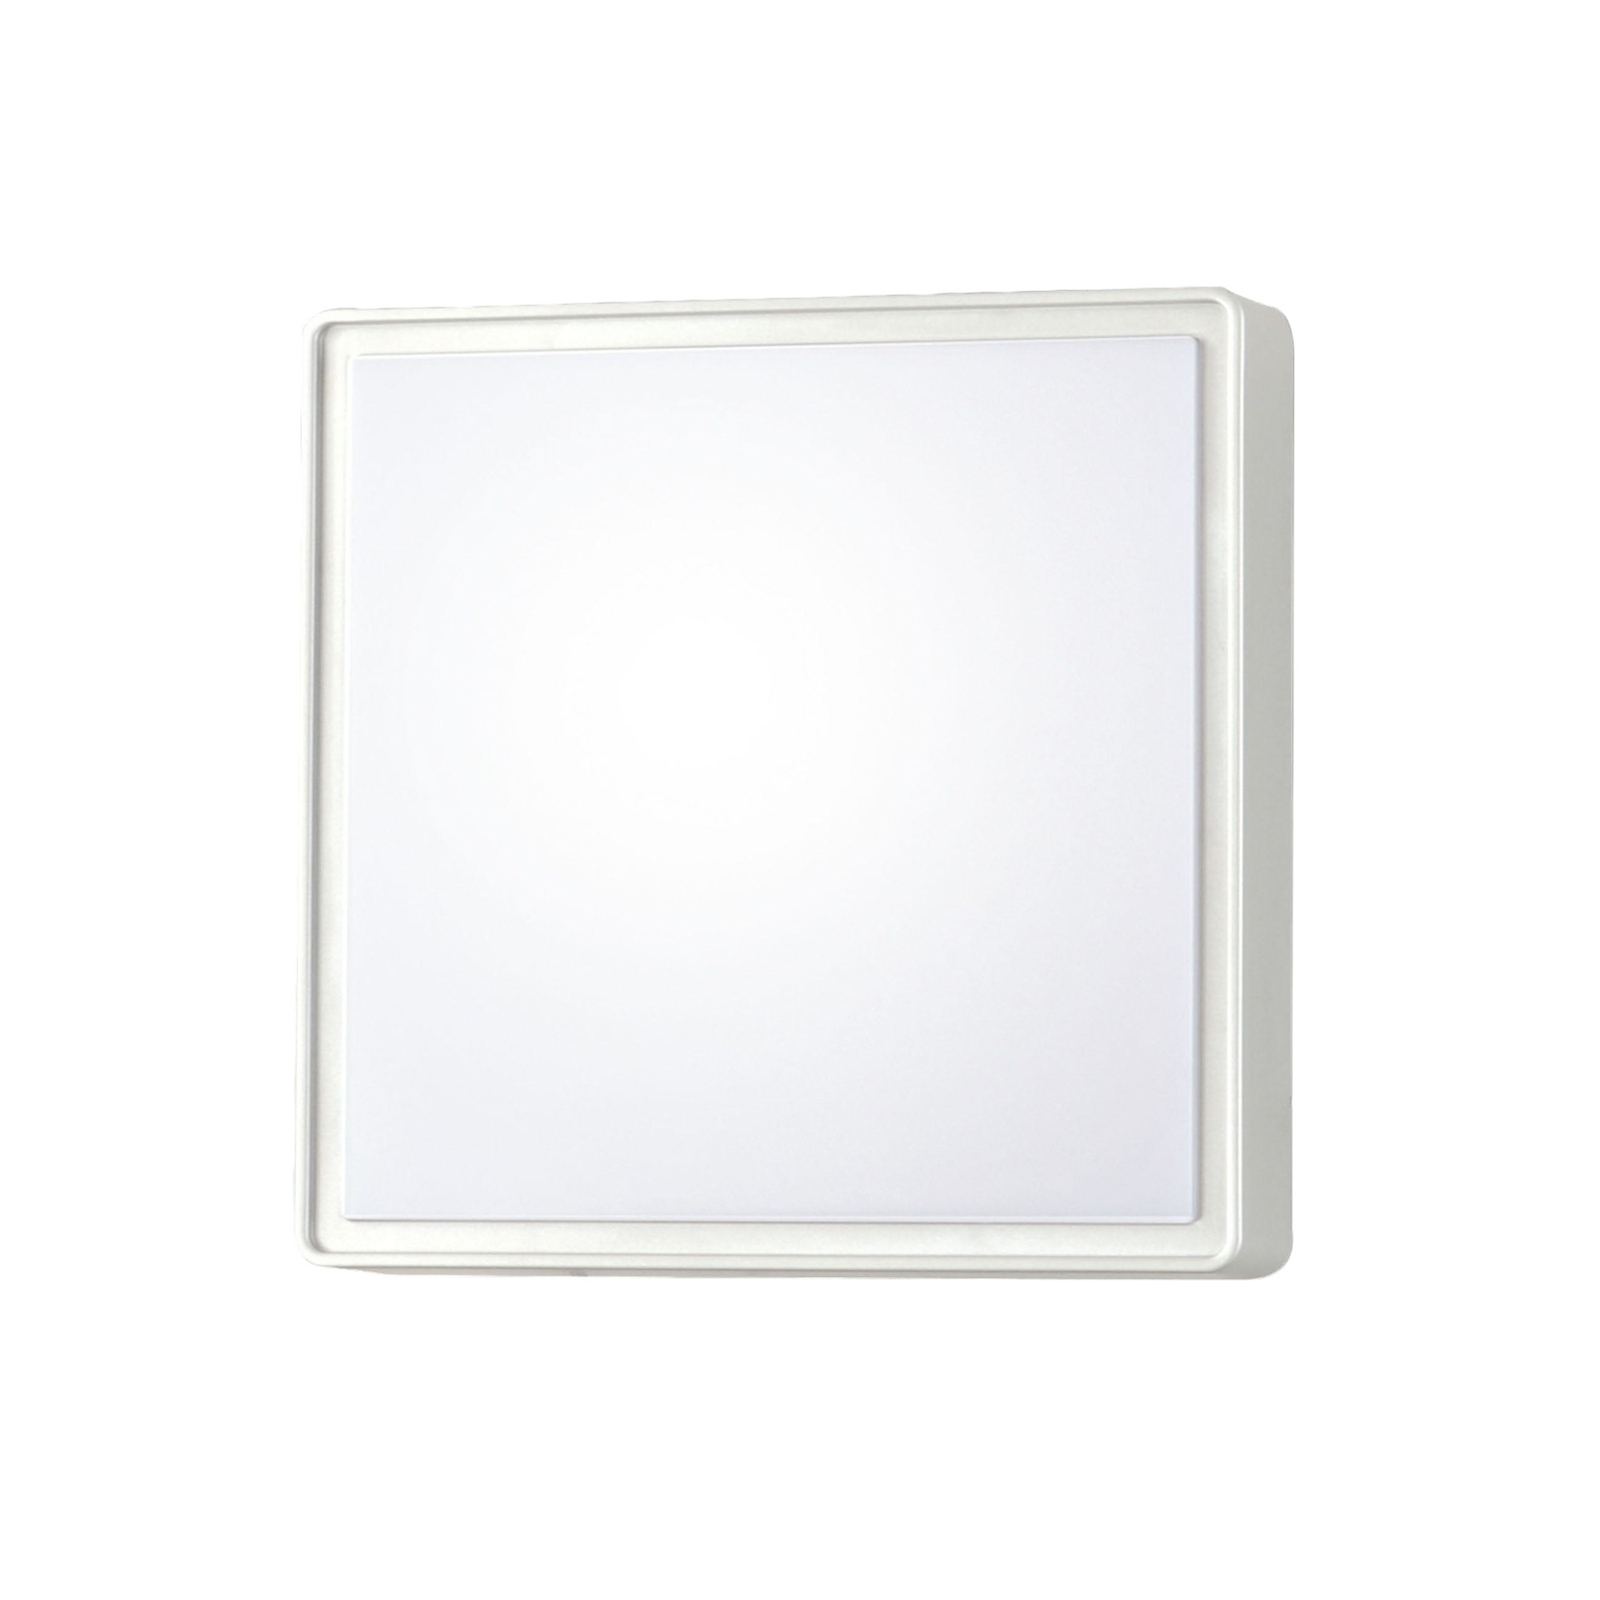 Φωτιστικό τοίχου Oban, 30 cm x 30 cm, 2 x E27, λευκό, IP65